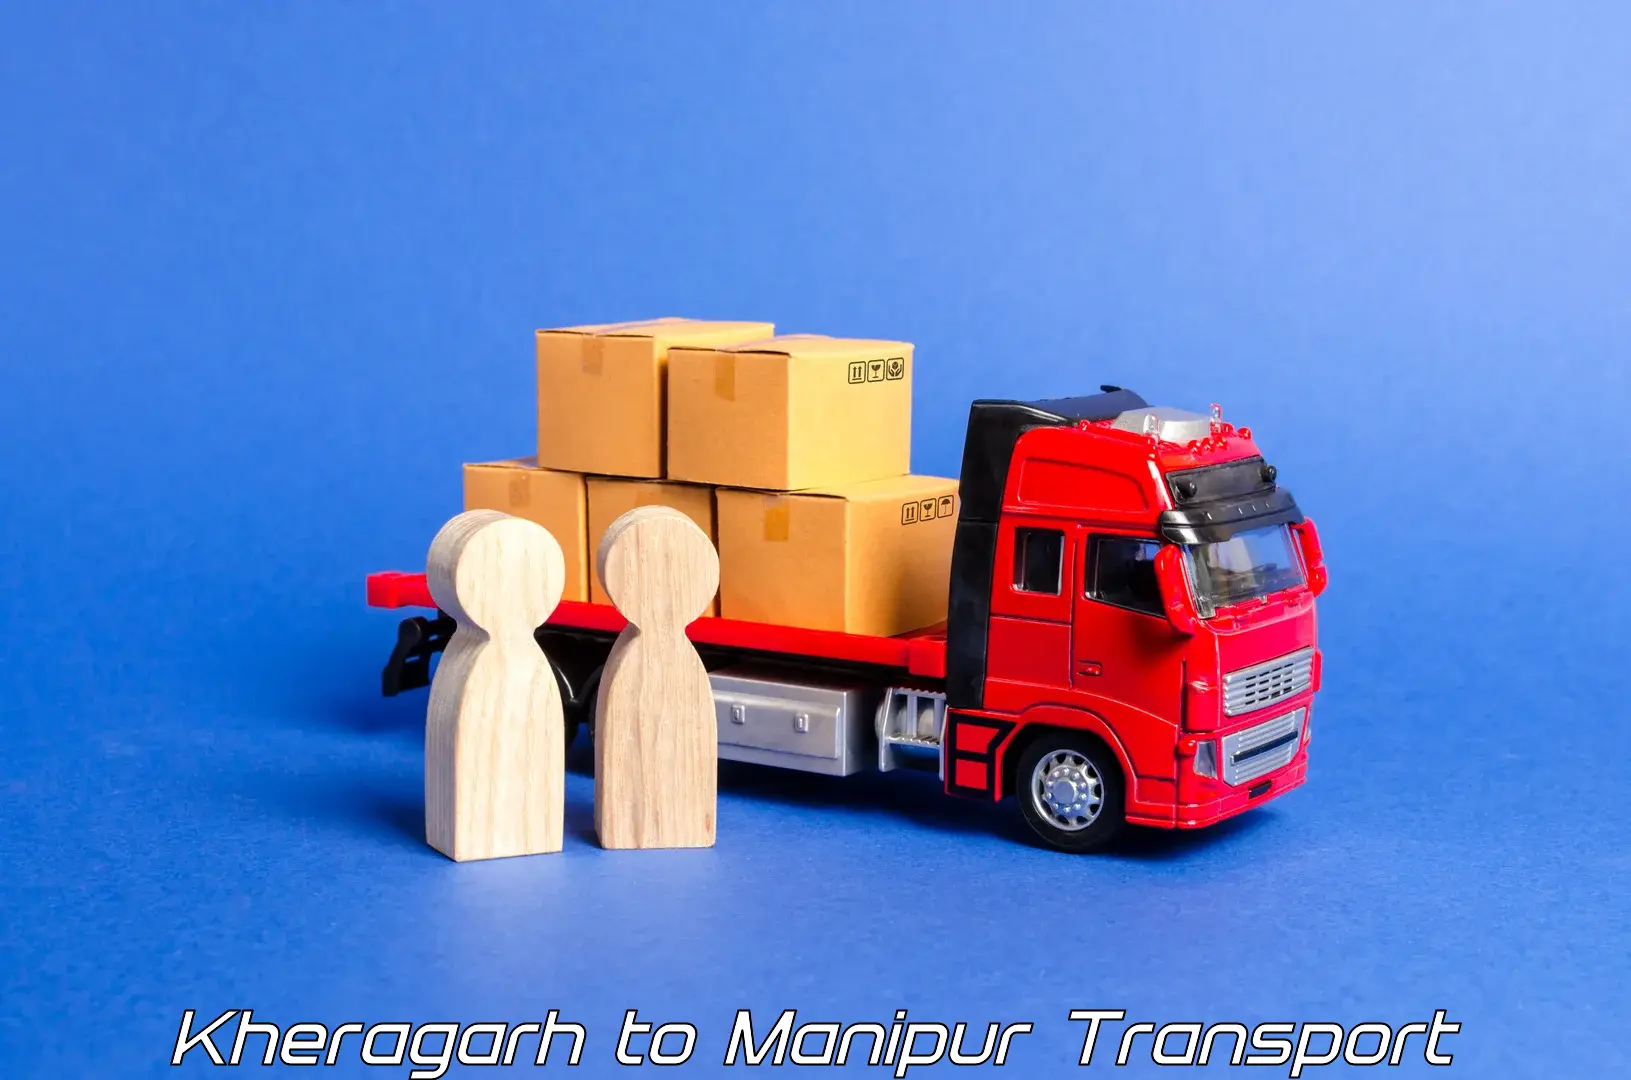 Lorry transport service Kheragarh to Moirang